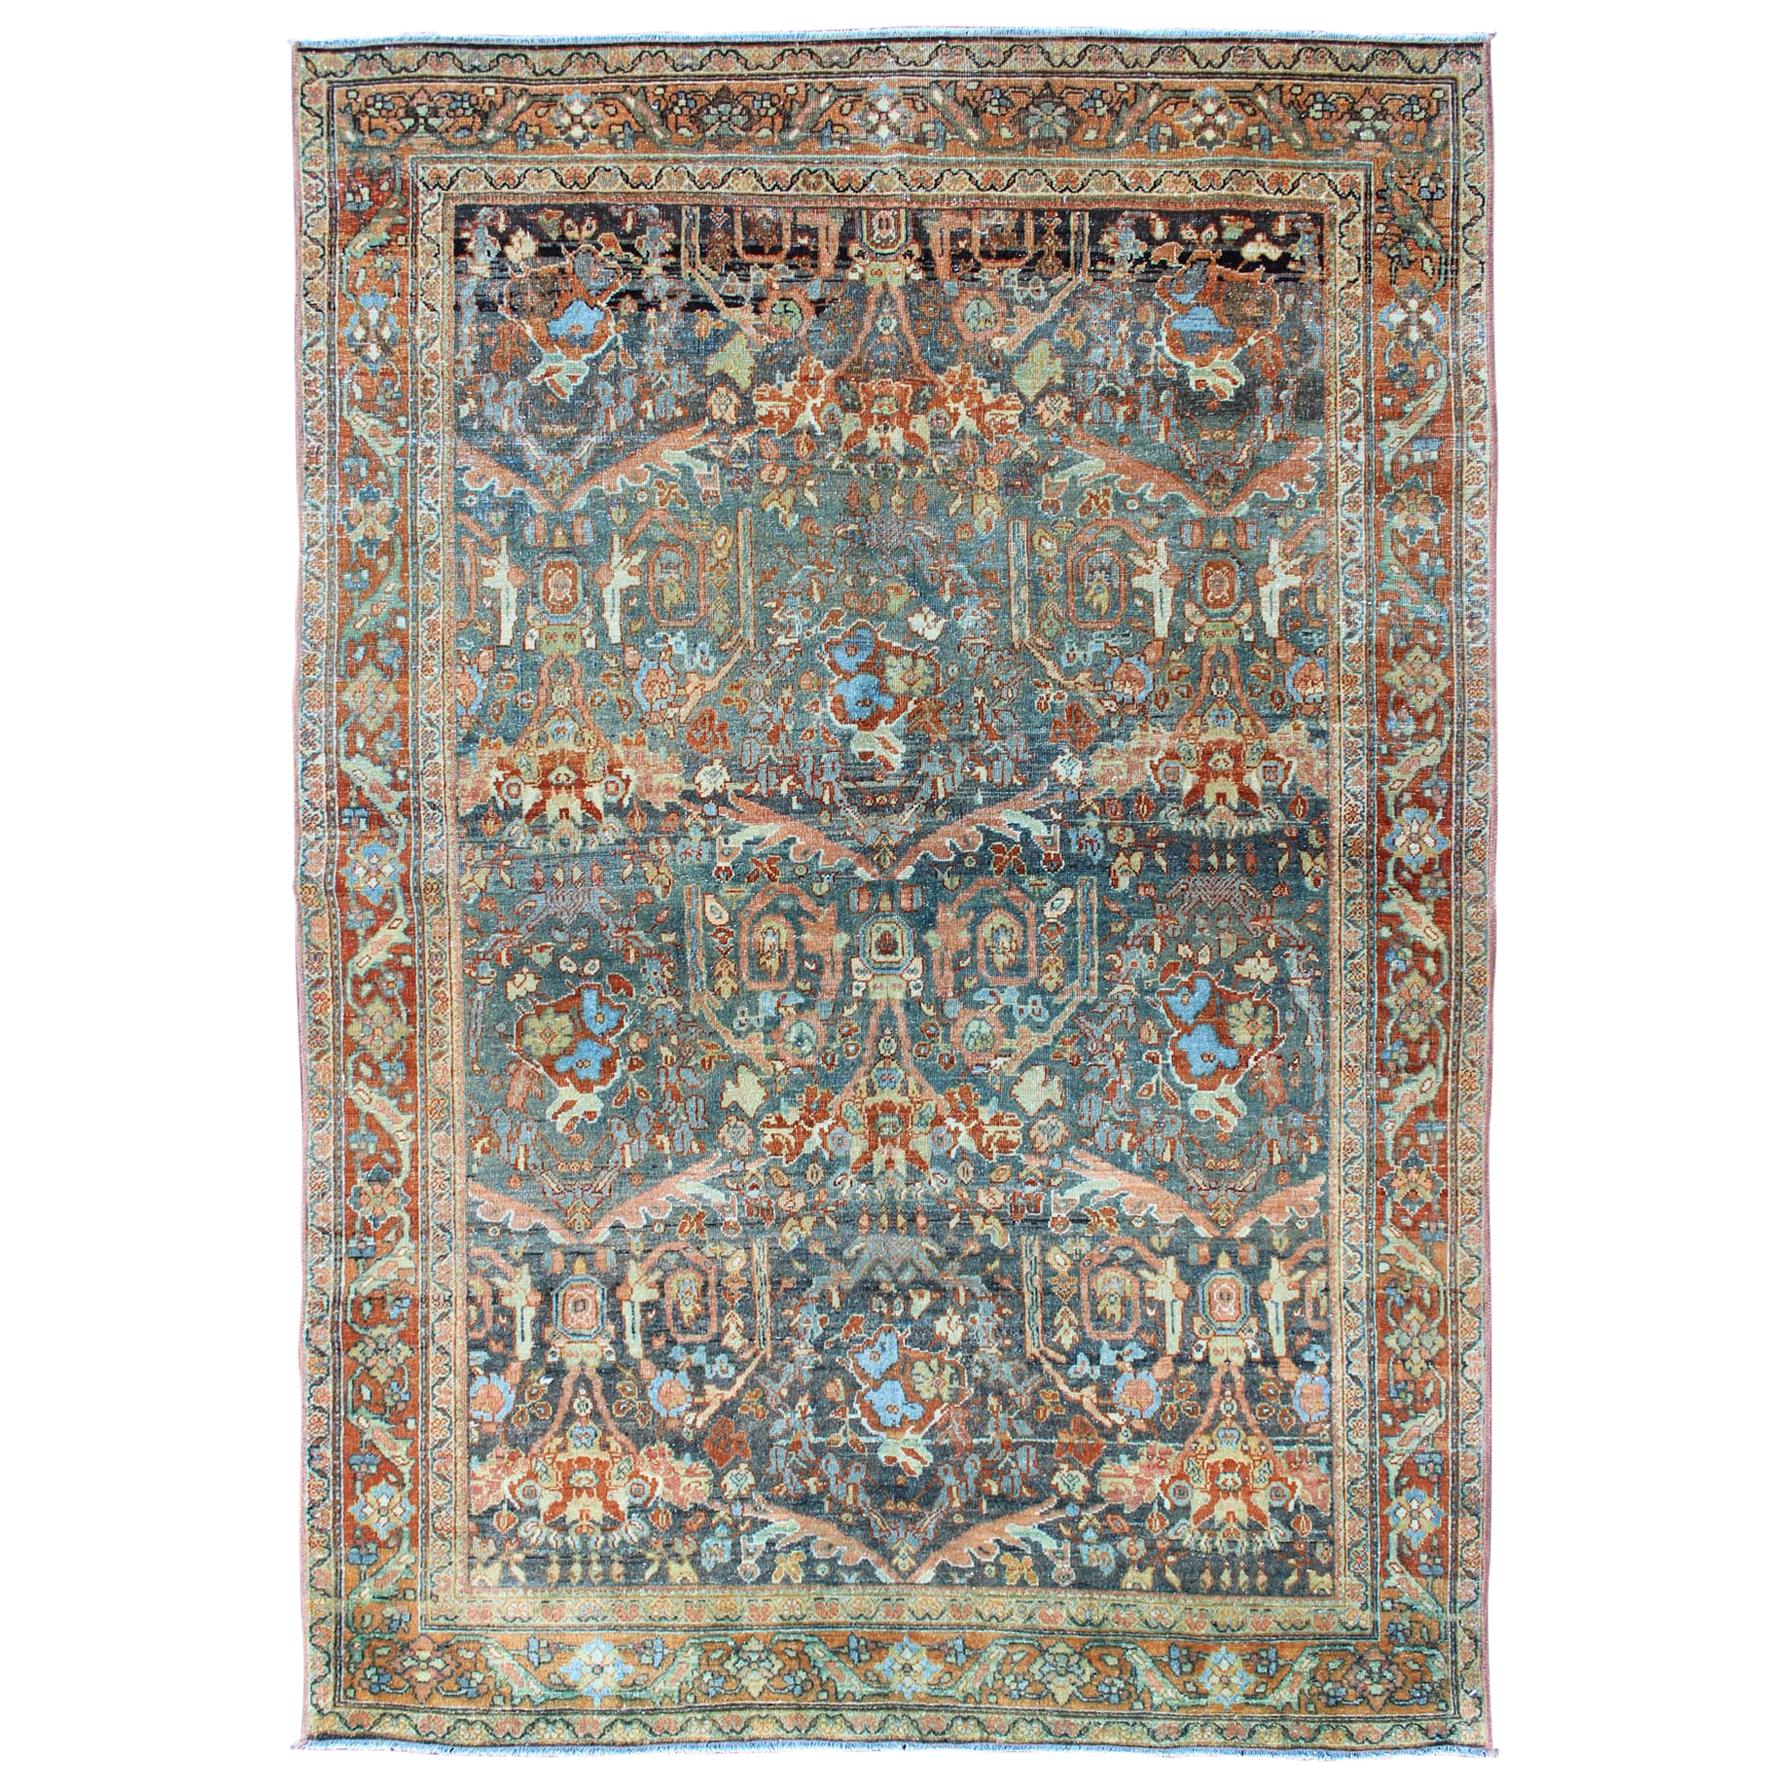 Tapis persan antique Tabriz à motifs floraux en tout genre